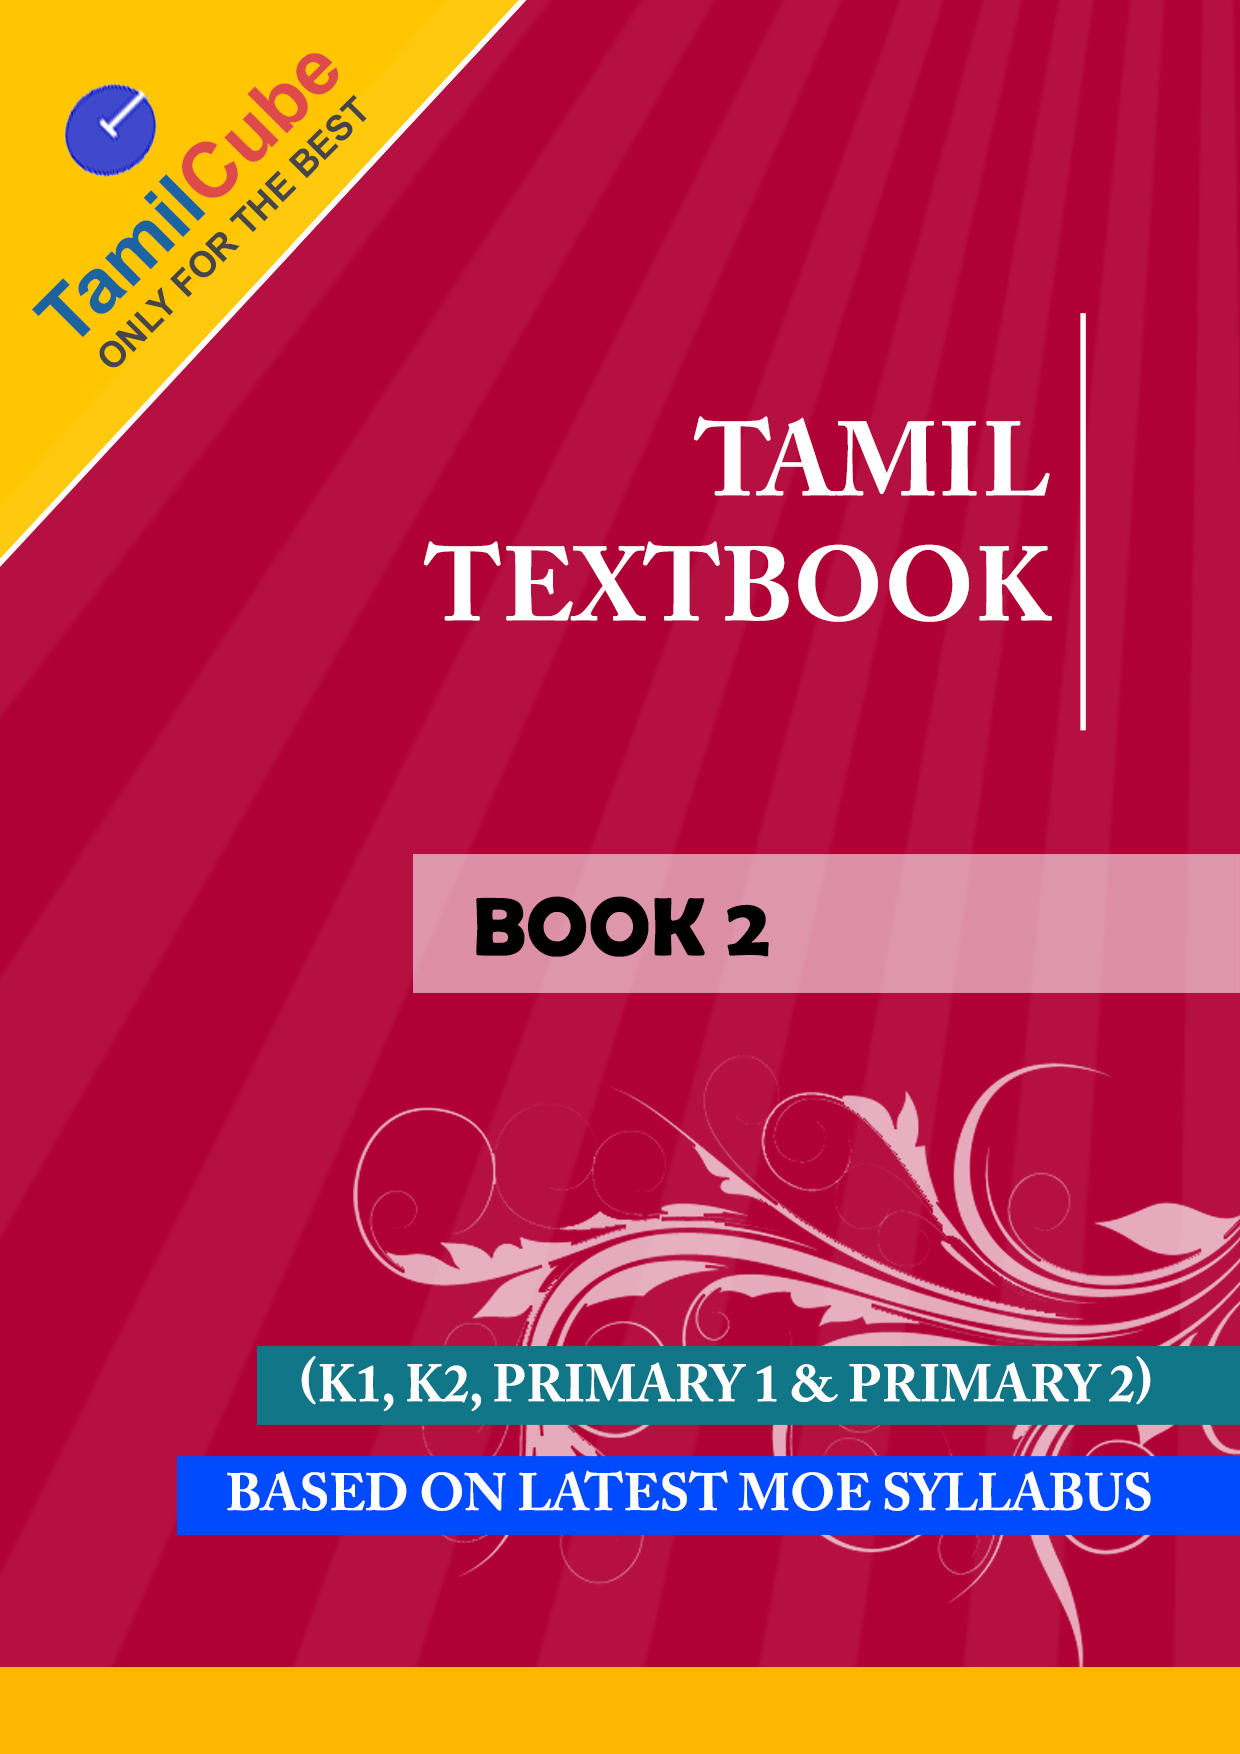 Atma bodha tamil pdf books